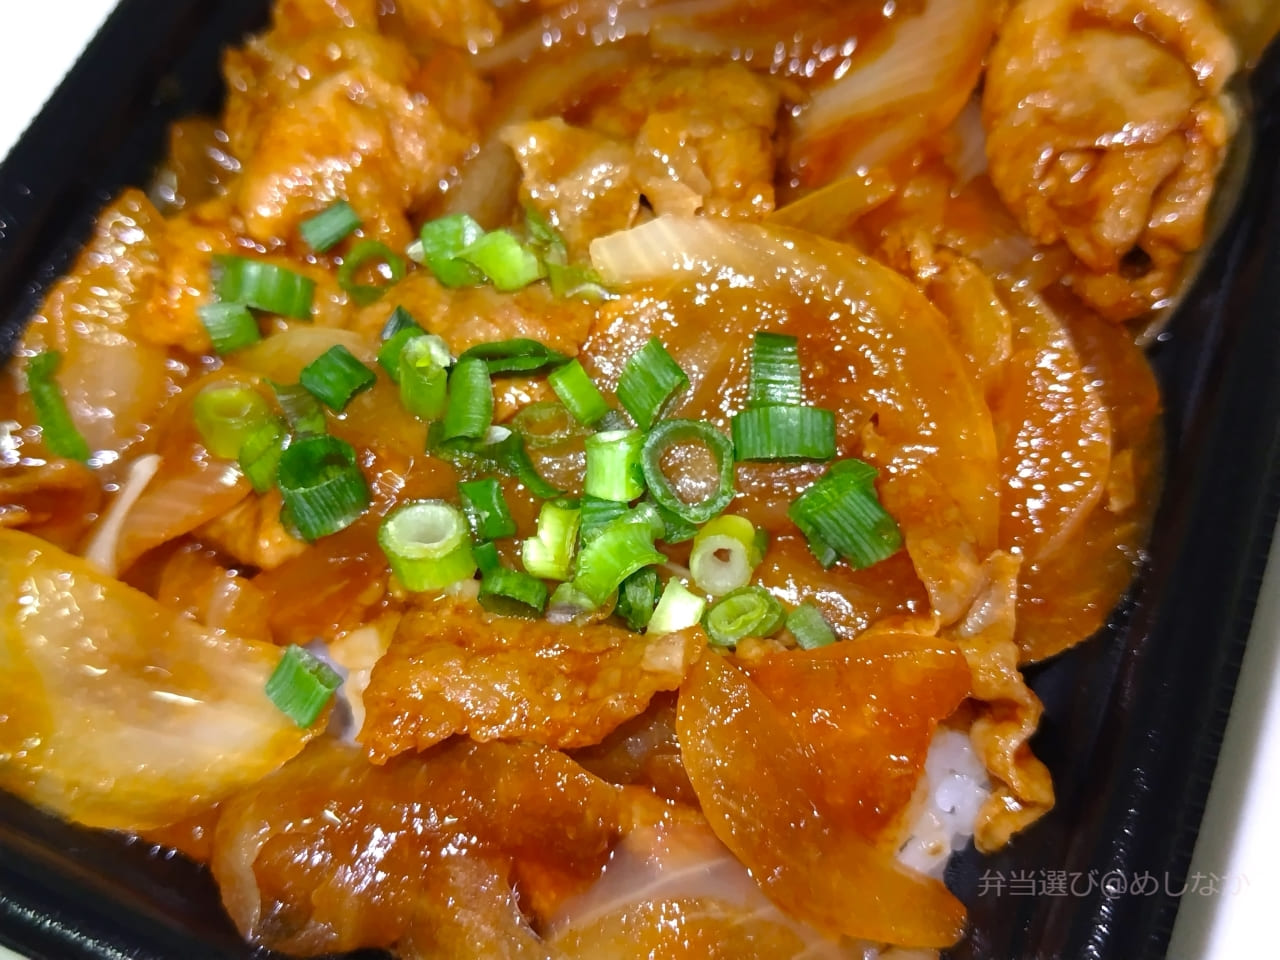 生姜焼きの豚肉のアップ